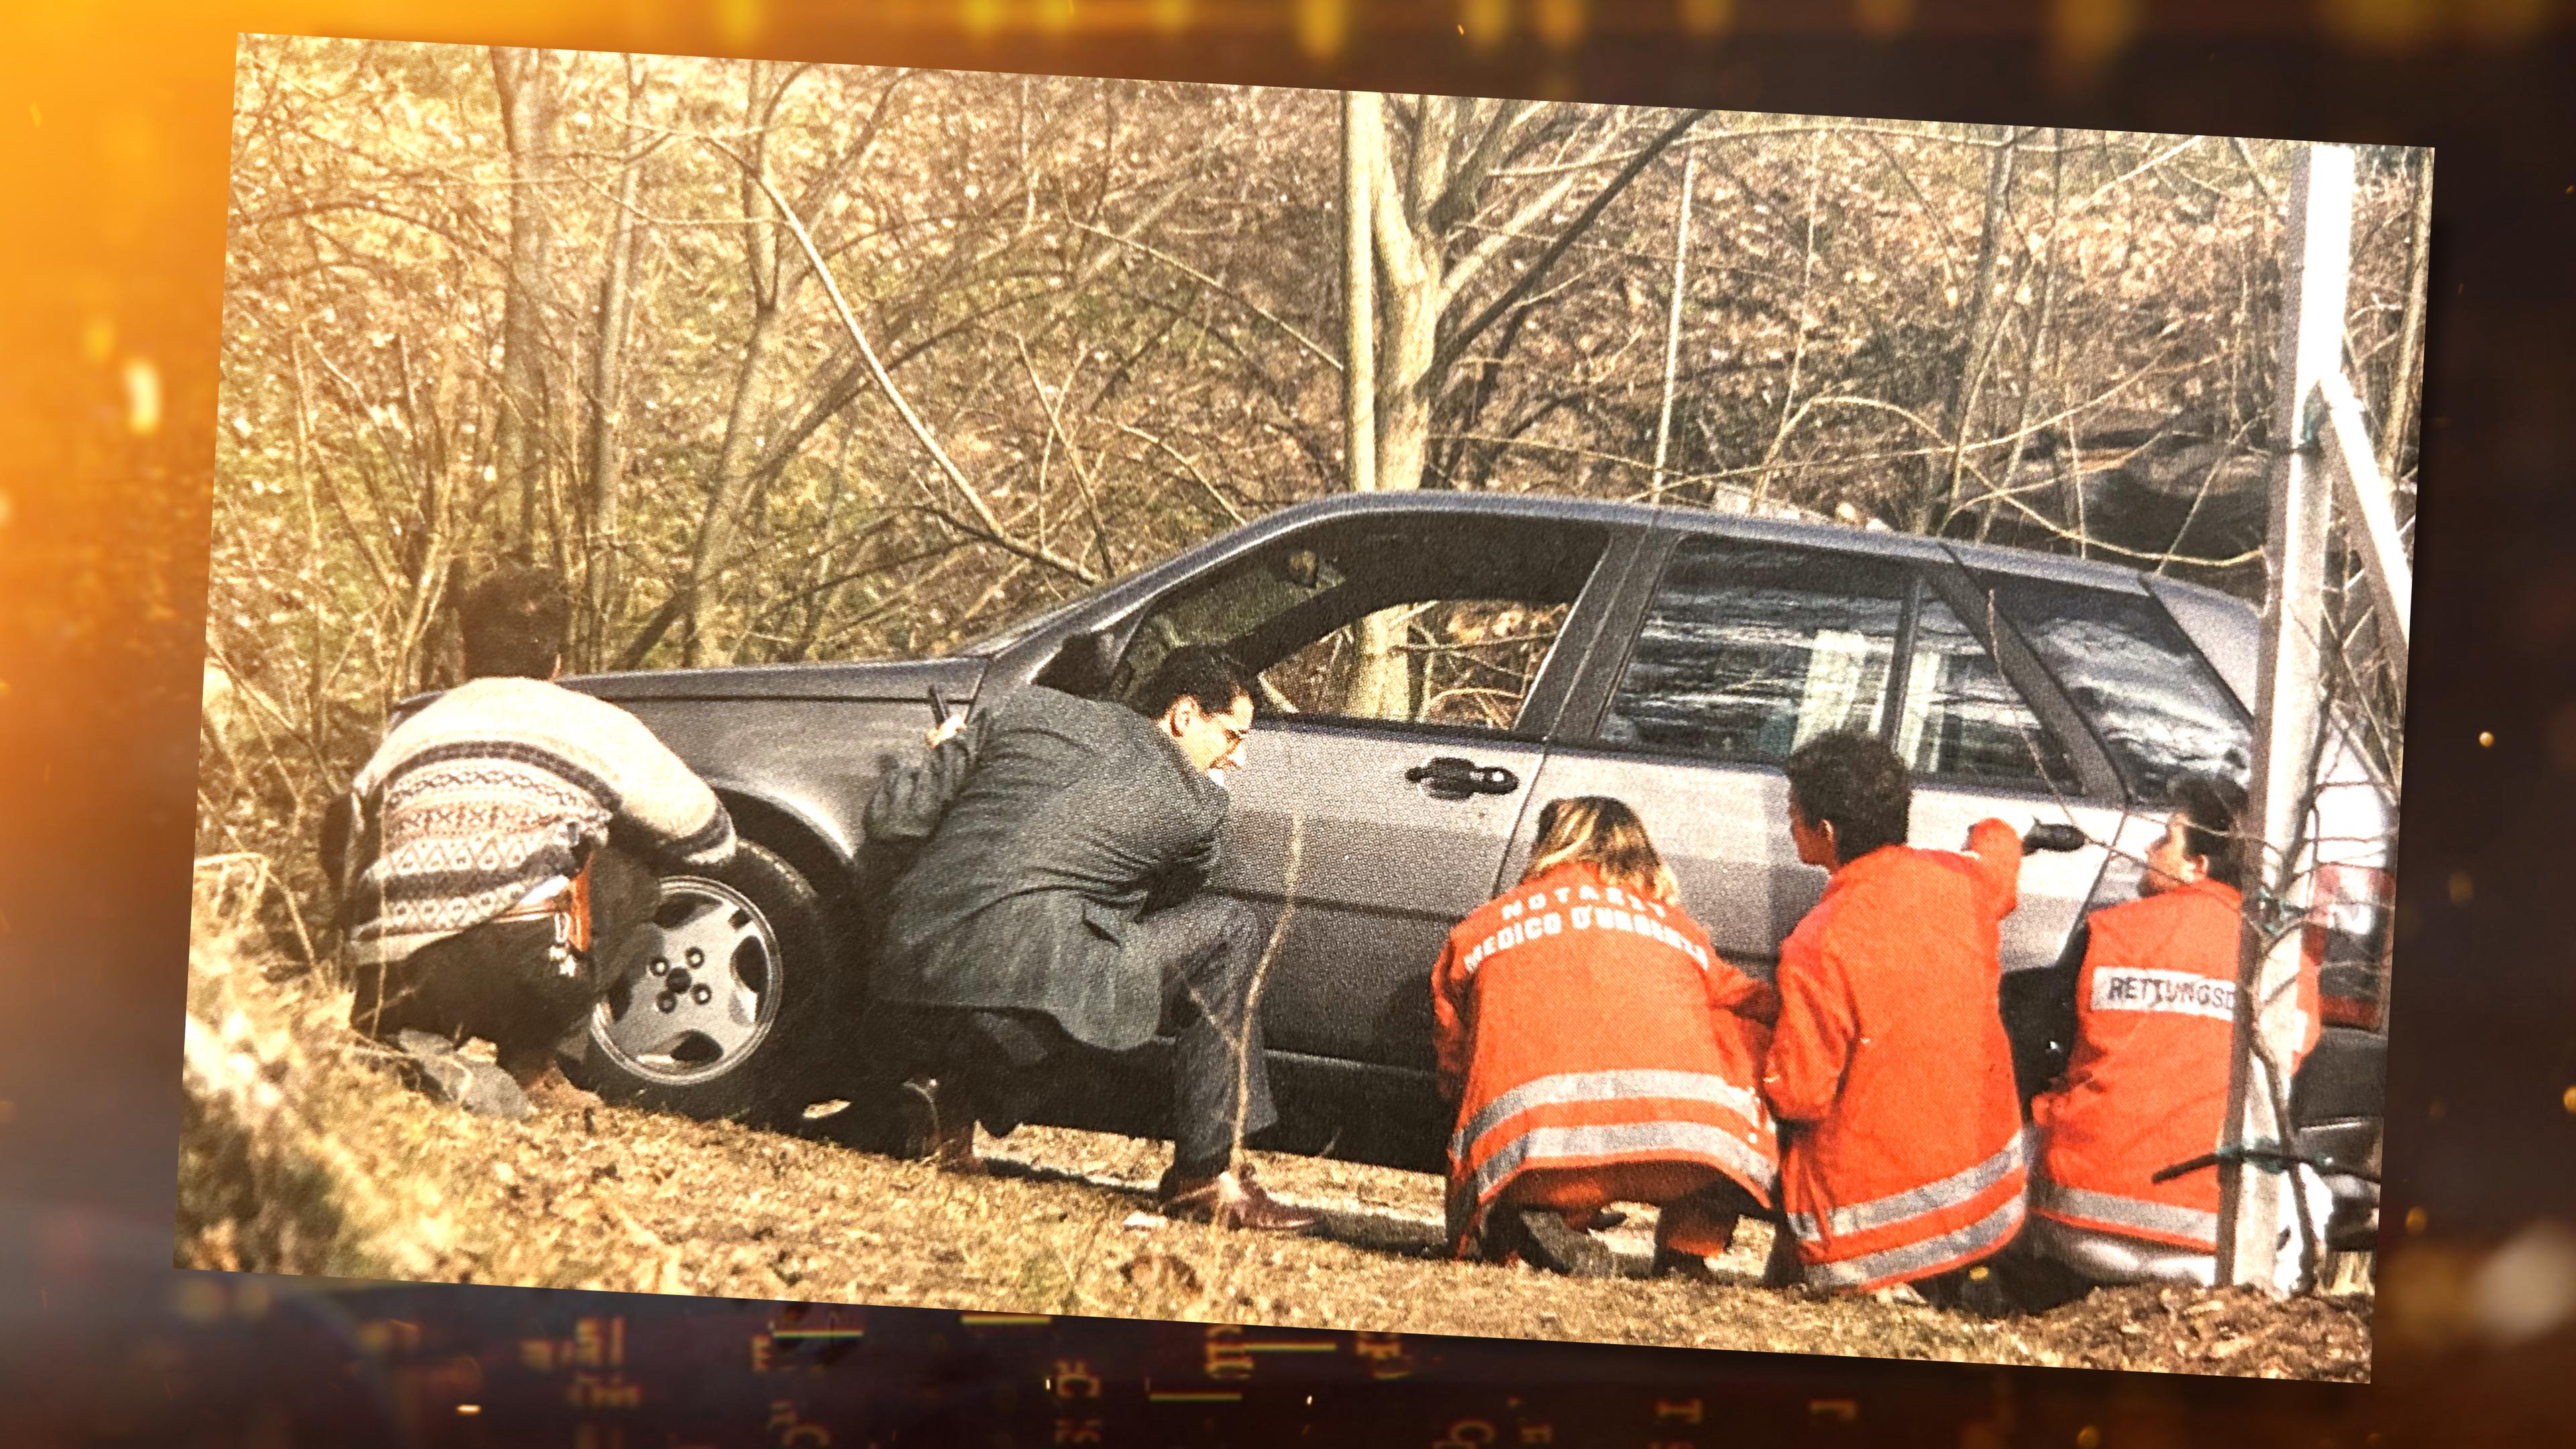 Ermittler Alexander Zelger, drei Rettungskräfte in orangefarbenen Anzügen und ein weiterer Mann gehen hinter einem Auto, das im Wald steht, in Deckung.